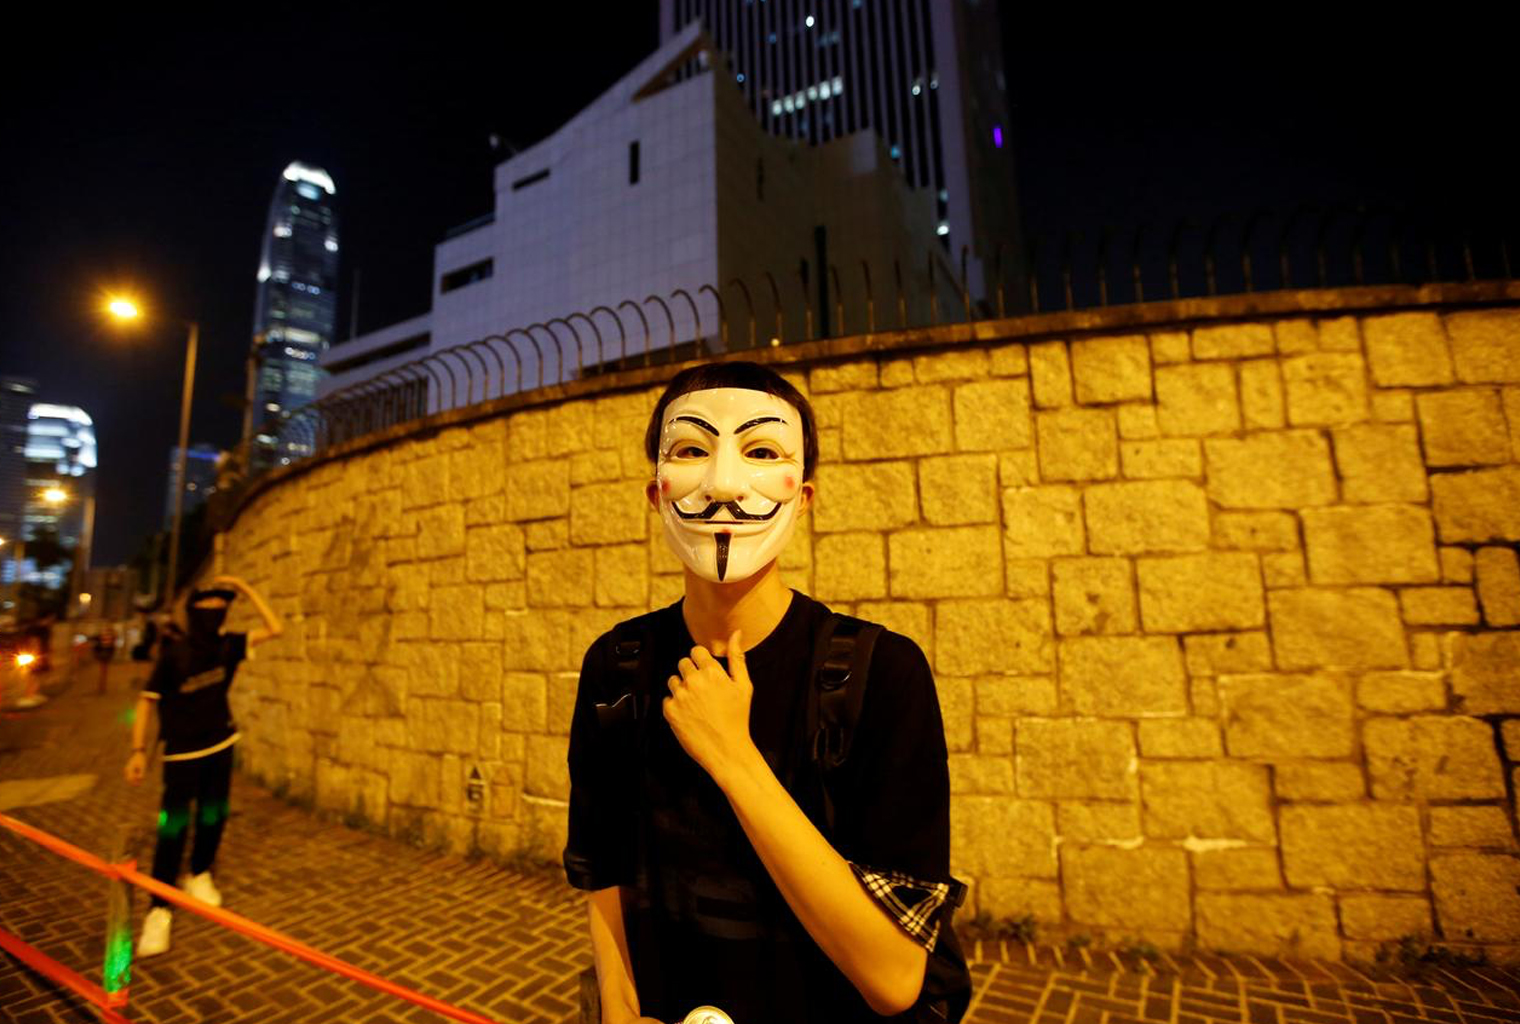 Los manifestantes manejan herramientas de libertad mientras Hong Kong impone la dictadura